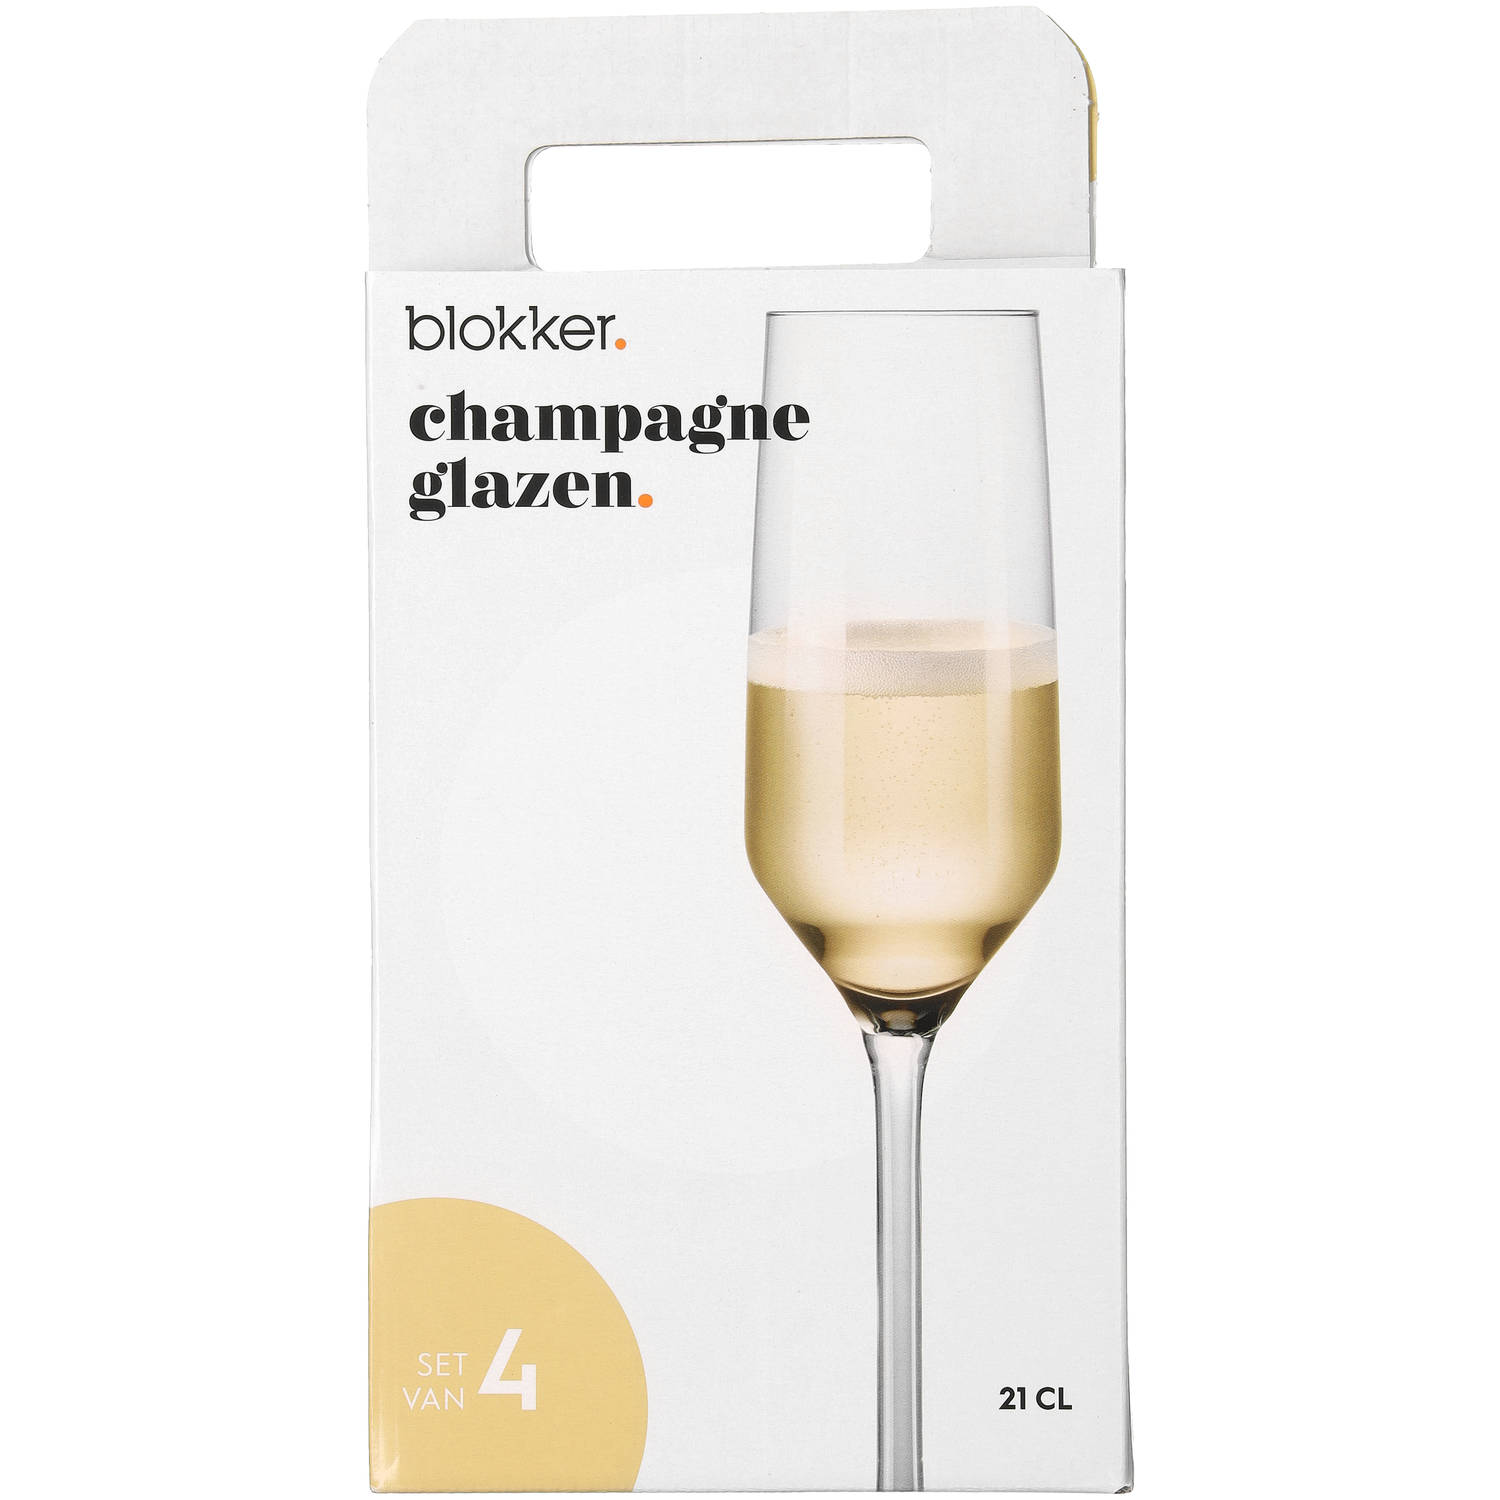 Dicteren Dislocatie Oxide Blokker champagne glazen Luxe - 21 cl - set van 4 | Blokker